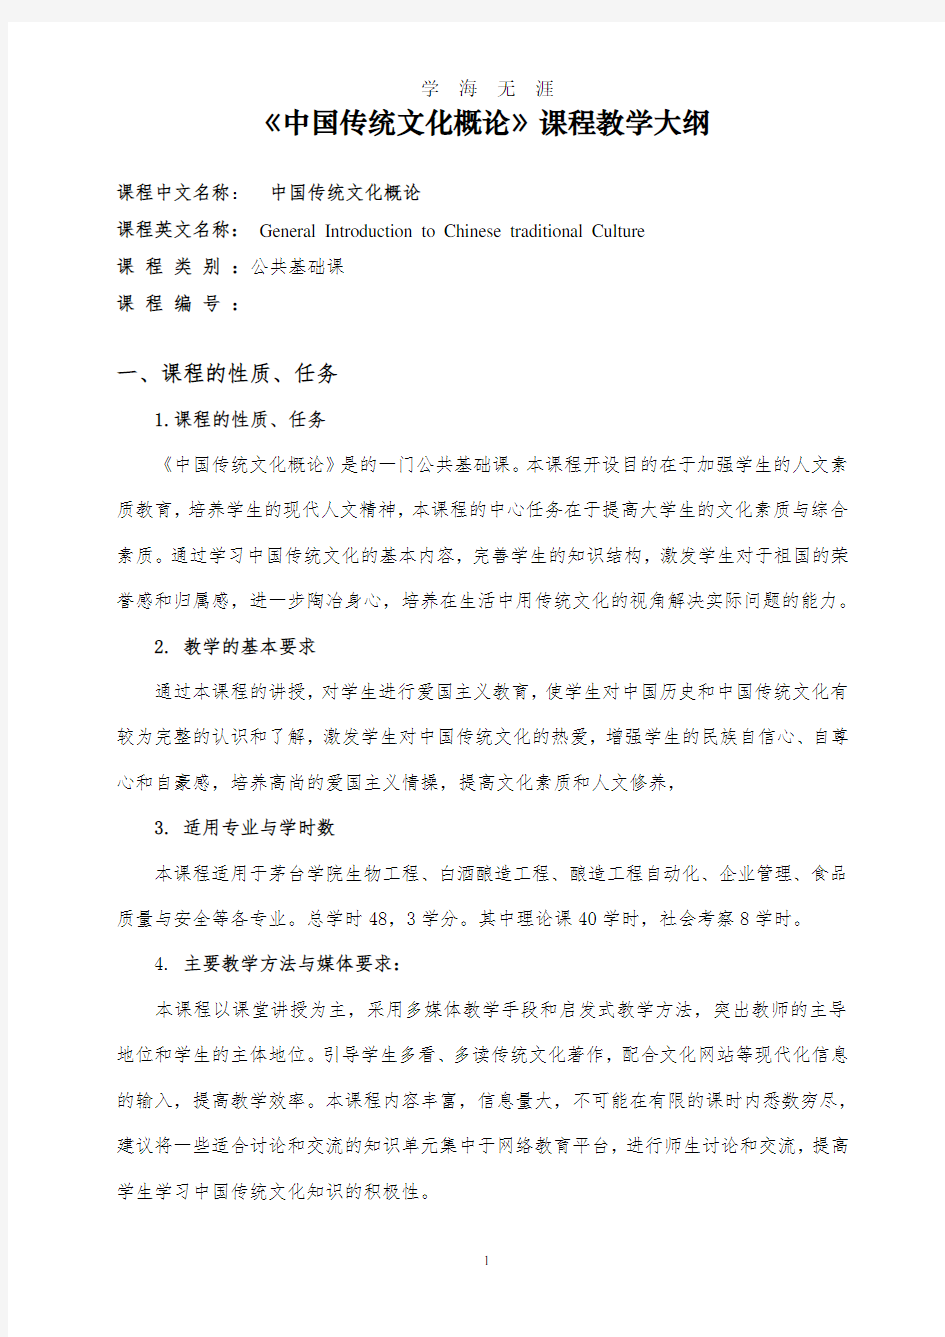 《中国传统文化概论》课程教学大纲(大专班).pdf